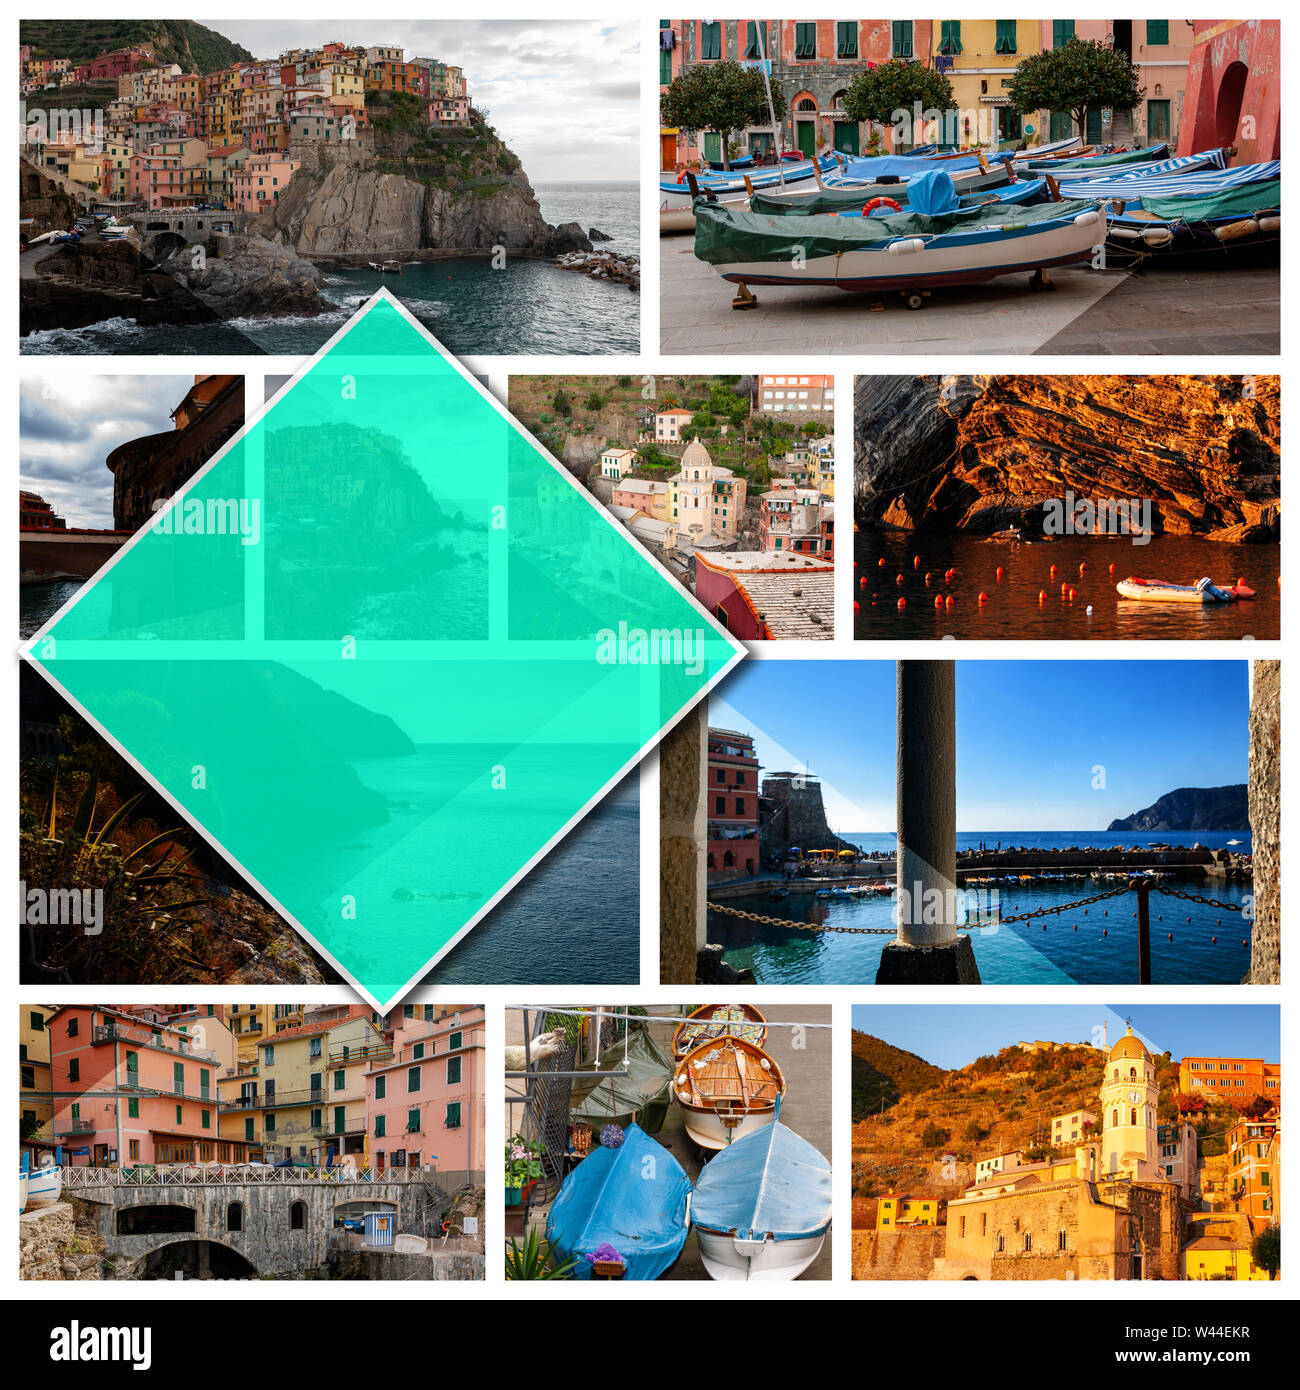 Collage Fotos von Cinque Terre, Italien, im 1:1 Format. Vernazza und Manarola, schöne Badeorte und Fischer, ein beliebtes Touristenziel Stockfoto